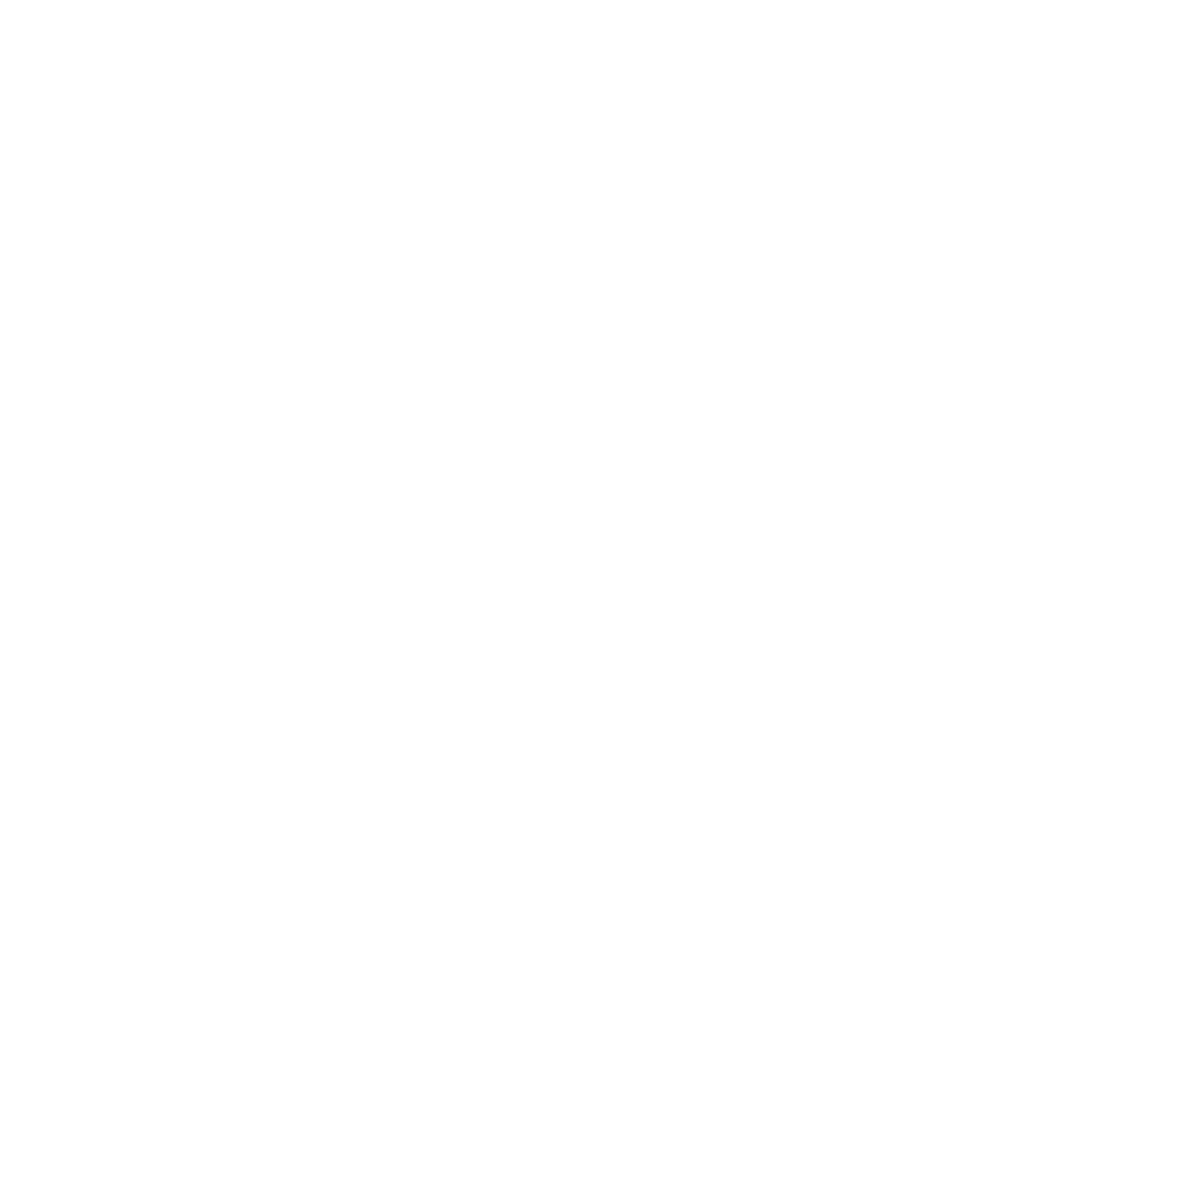 Pictogramme d'une tour d'ordinateur avec 2 ordinateurs autour représentant la polyvalence